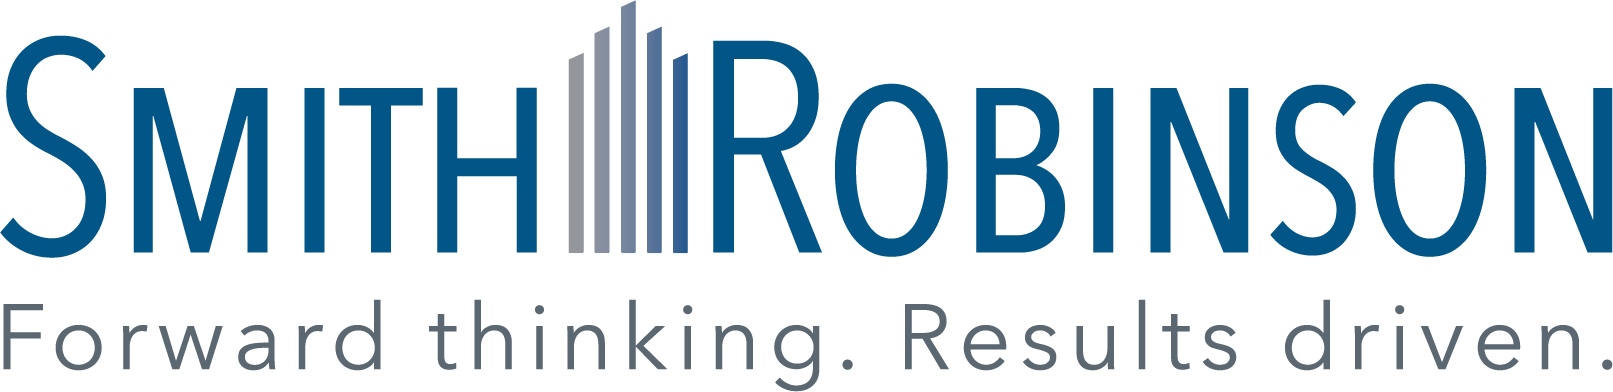 Smith Robinson logo